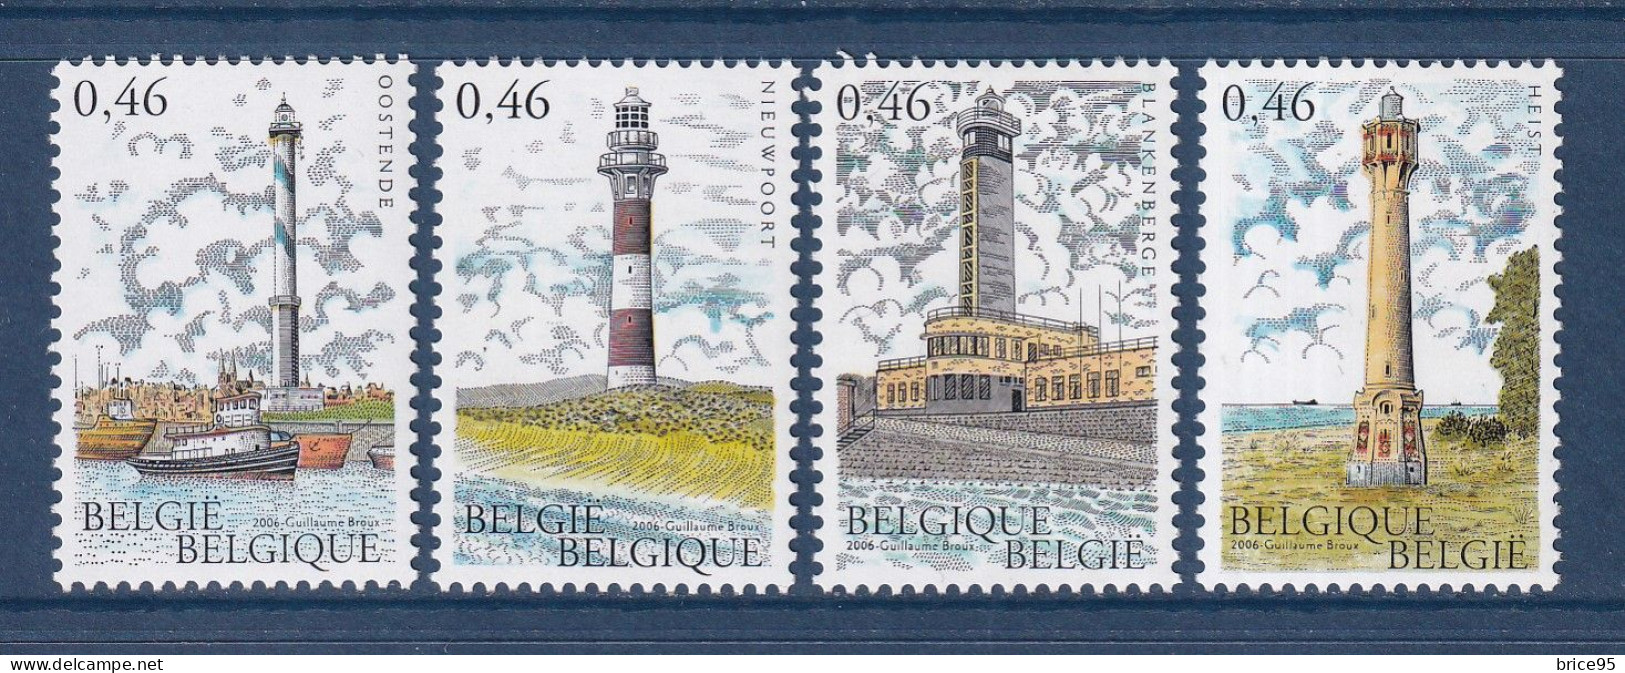 Belgique - YT N° 3514 à 3517 ** - Neuf Sans Charnière - 2006 - Unused Stamps